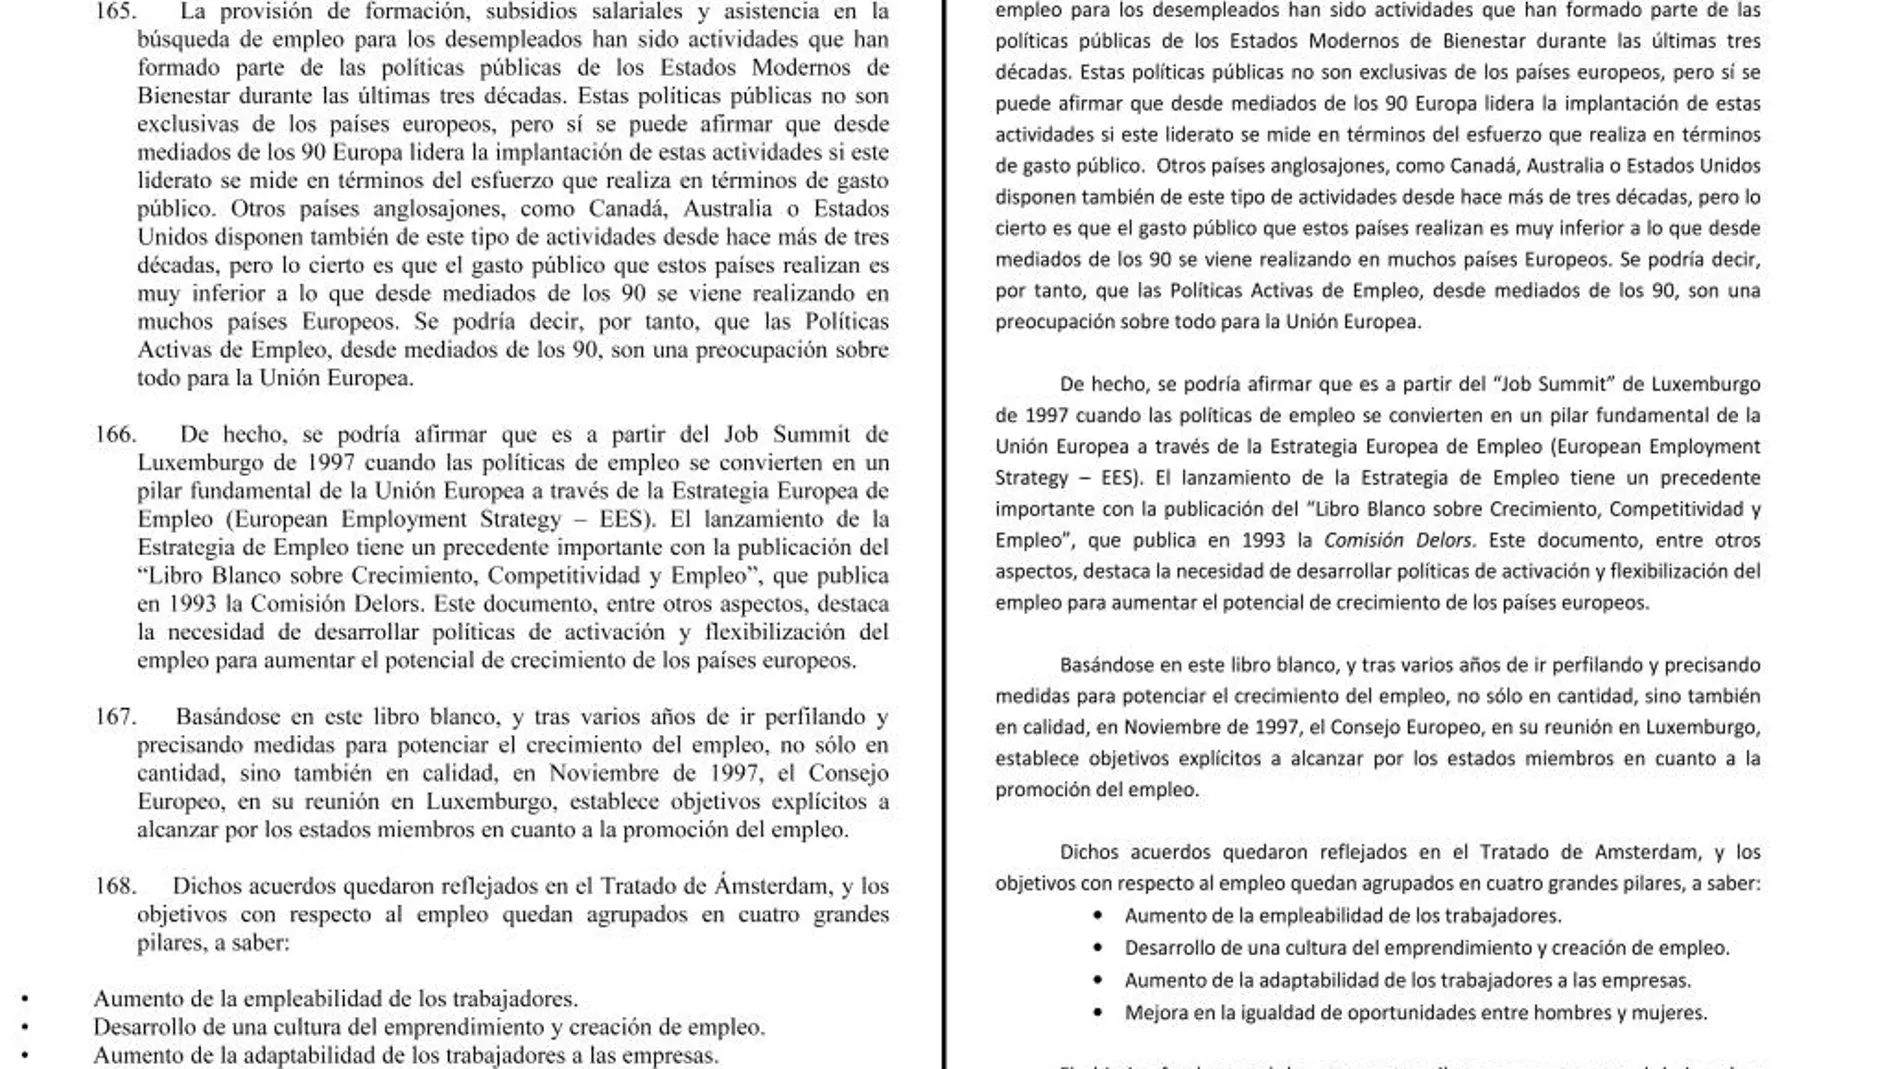 A la izquierda, una página de la propuesta de dictamen de Julio Díaz, junto a otra del trabajo de Sara de la Rica, ligado a la fundación Fedea. Se pueden observar las similitudes entre ellas